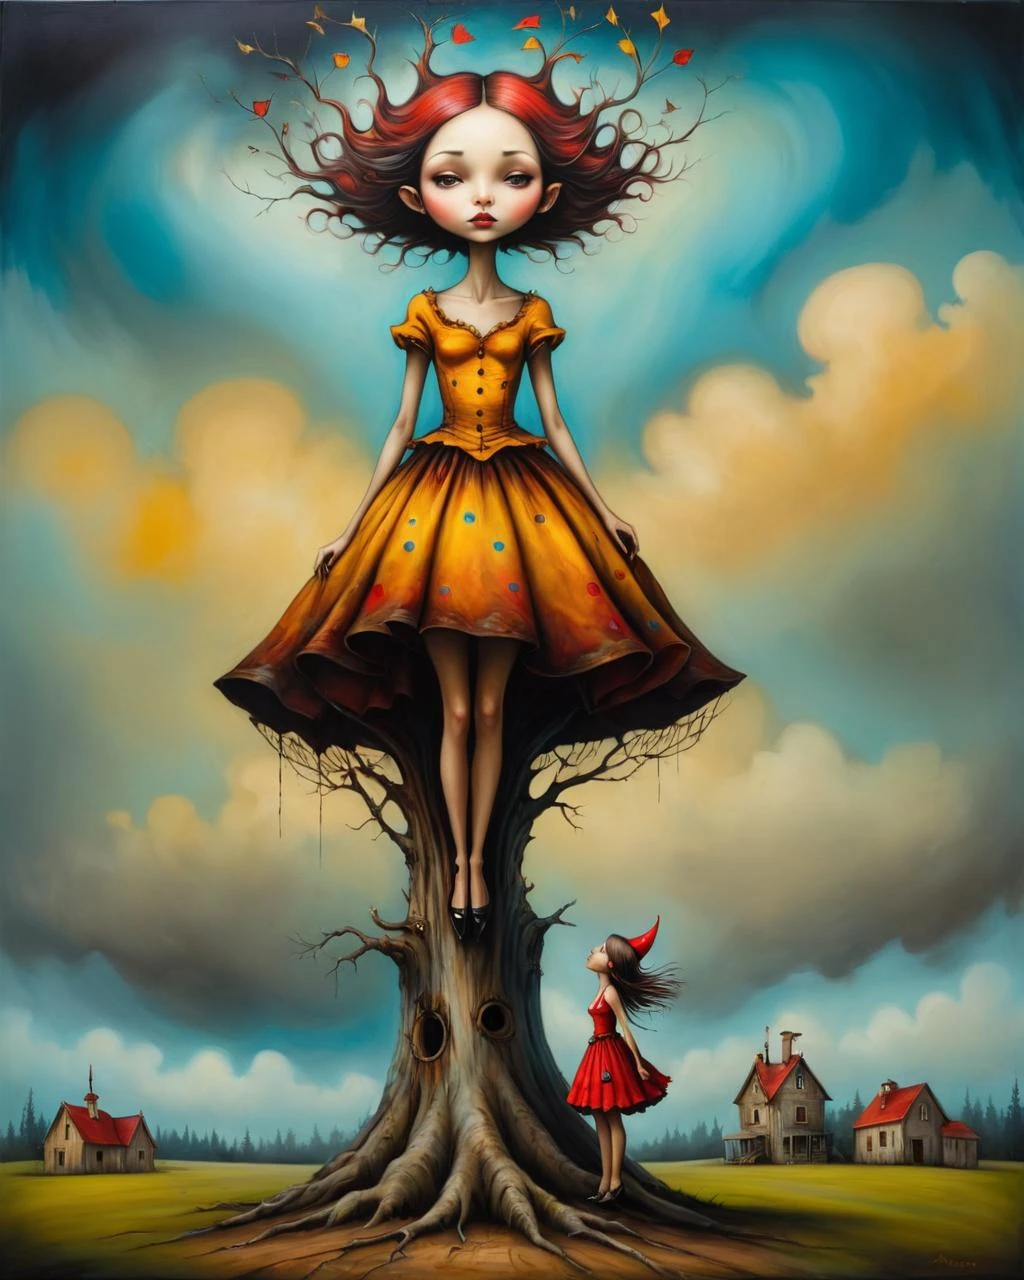 Psychedelic style in the style of ลองแอนดรูว์,ลองแอนดรูว์ style,ลองแอนดรูว์ art,ลองแอนดรูว์a girl is standing in a tree stump, inspired โดย Esao Andrews, ลองแอนดรูว์, โดย Esao Andrews, inspired โดย สทป, style of ลองแอนดรูว์, เหนือจริง oil painting, ลองแอนดรูว์ ornate, โดย สทป, ศิลปะกอธิคตอนใต้, แอนดรู esao artstyle, จานา บริค อาร์ต, จิตรกรรมความสมจริงเวทย์มนตร์, ภาพวาดความสมจริงที่มีมนต์ขลัง . สีสันสดใส, รูปแบบการหมุนวน, รูปแบบนามธรรม, เหนือจริง, ทริปปี้